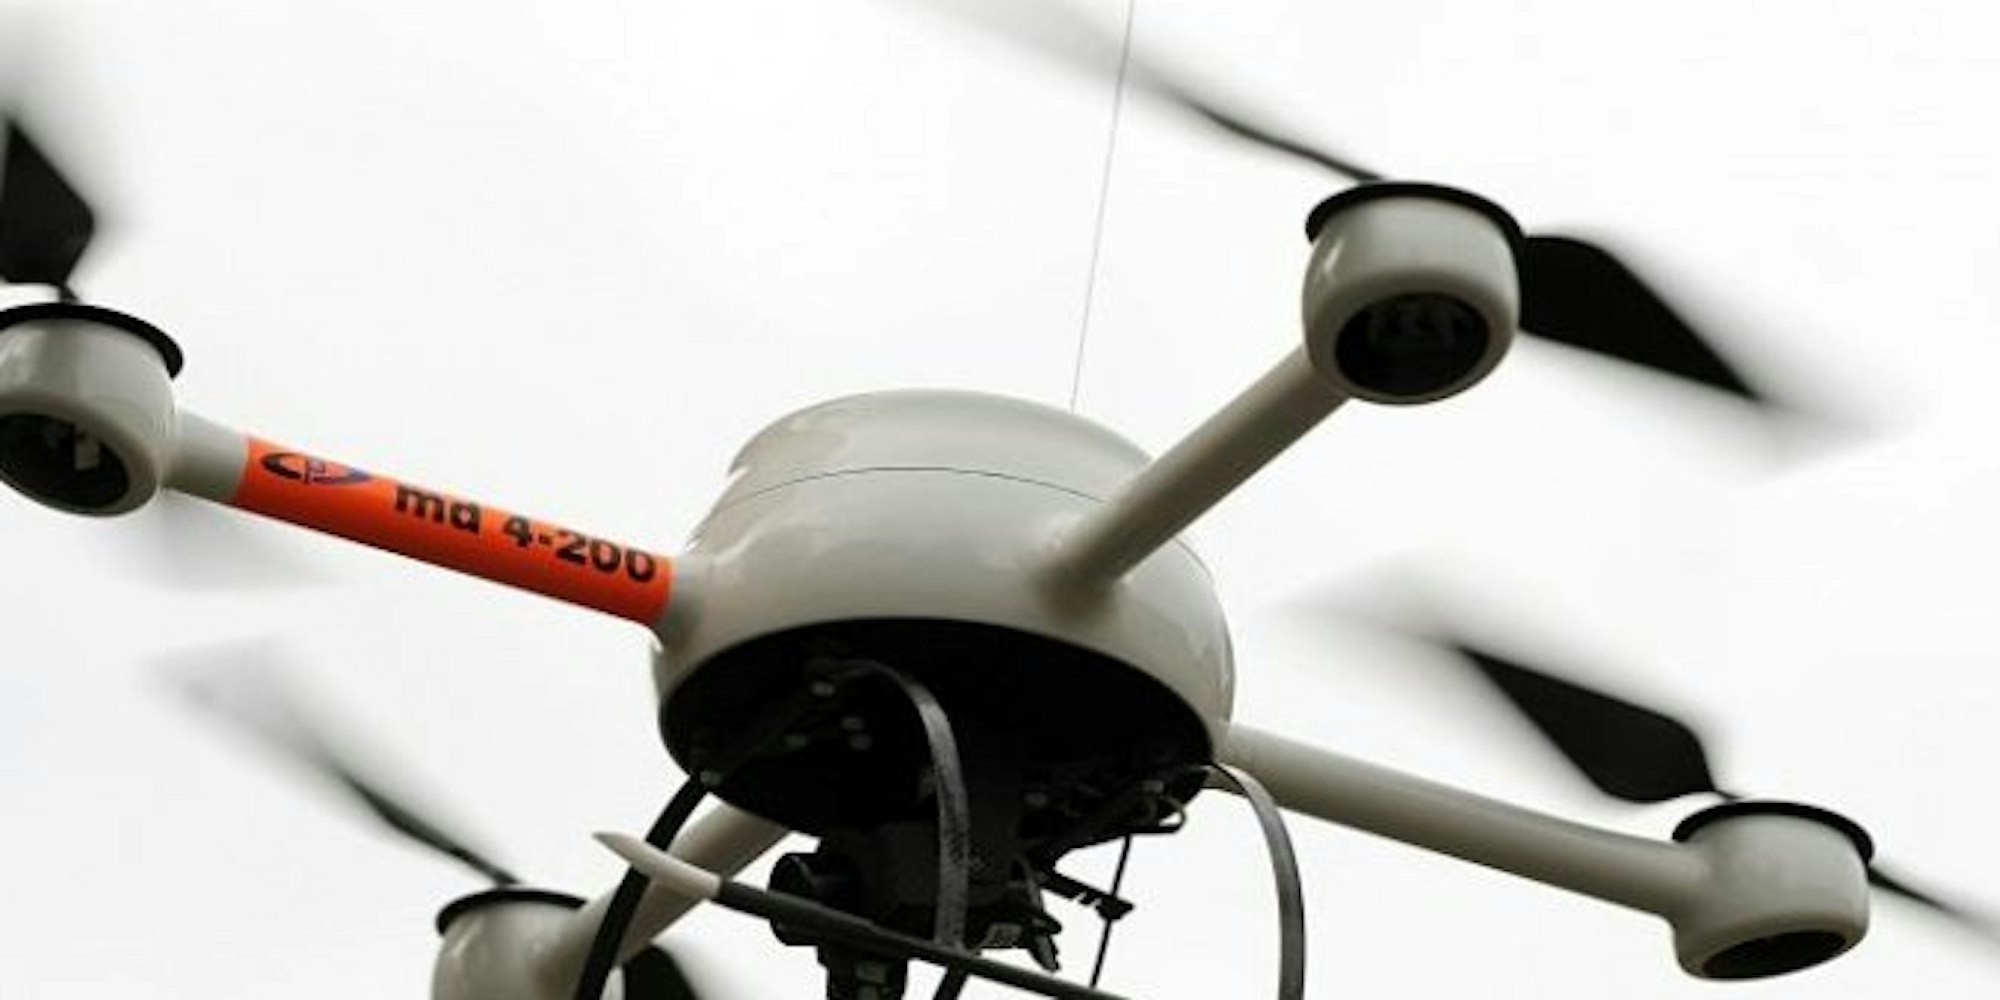 Mit solchen Drohnen will die Bahn Sprayer entdecken.